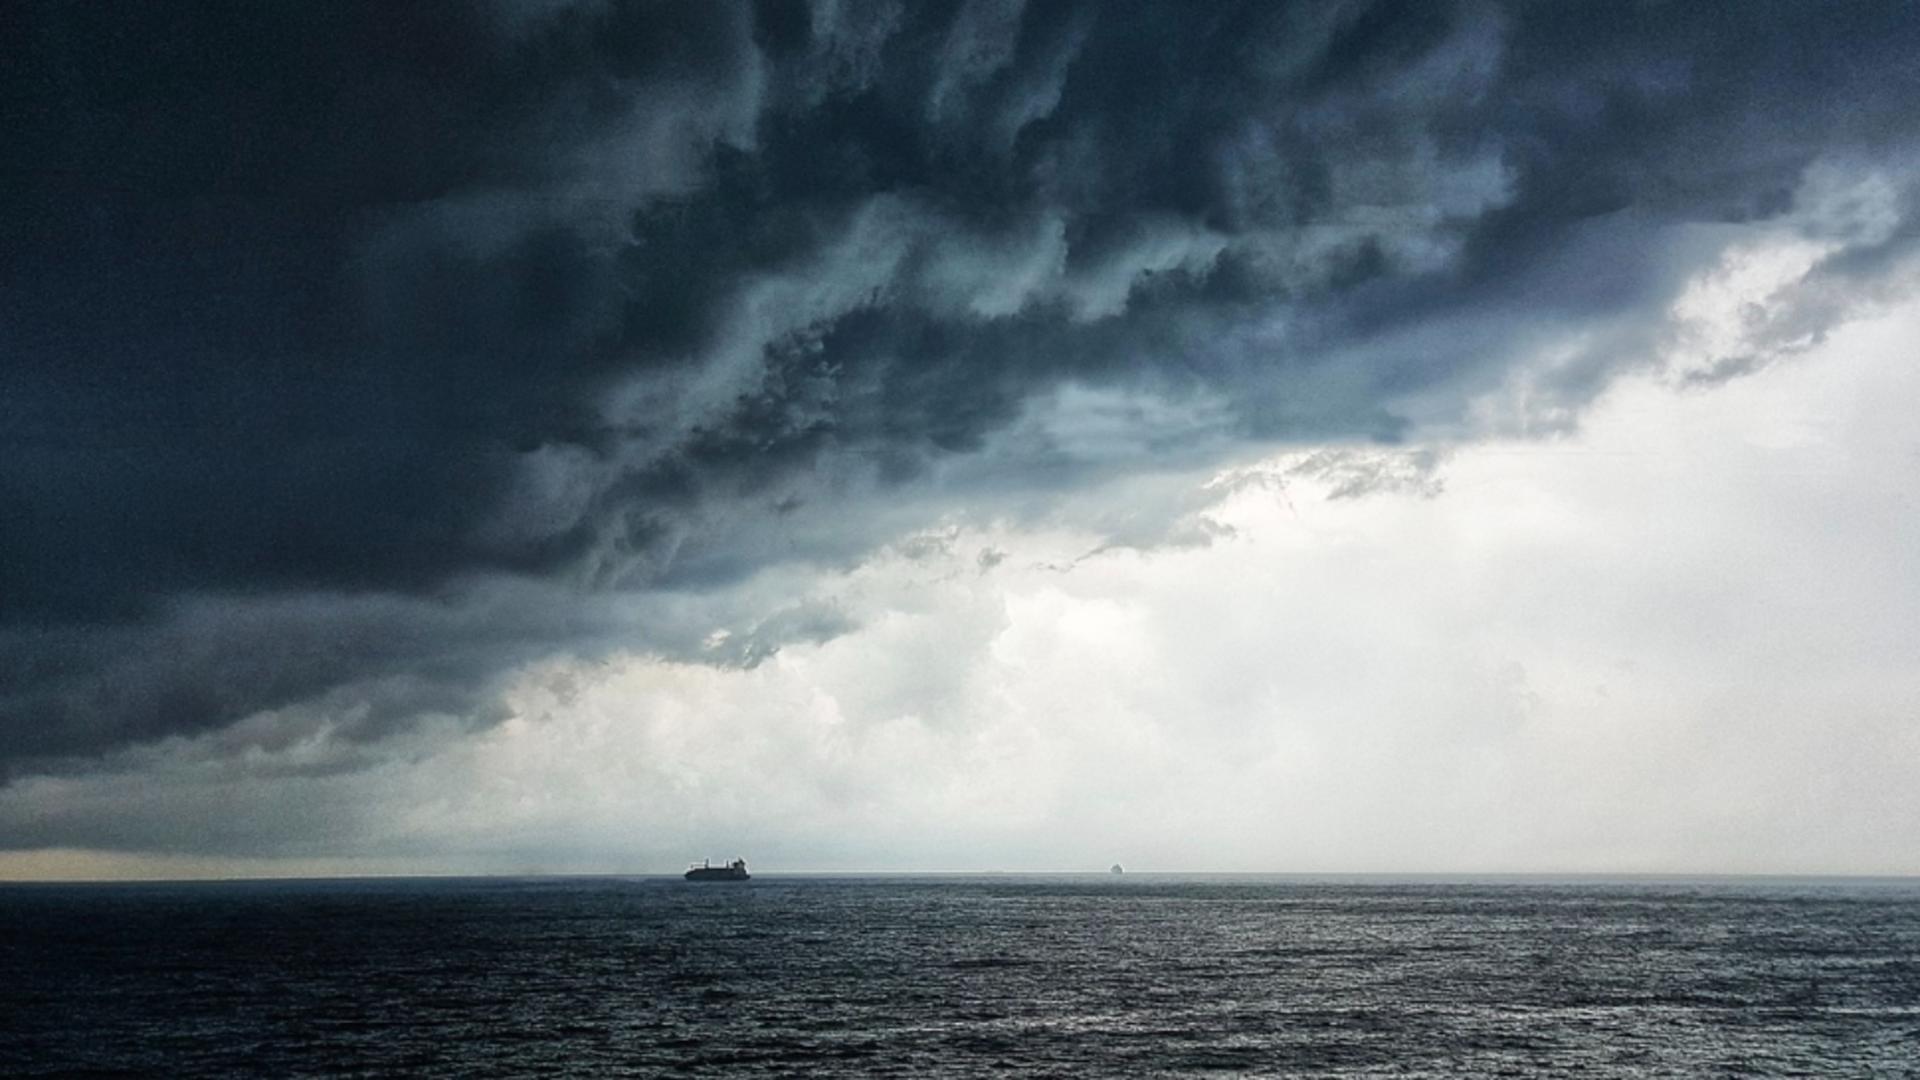 Navă turcească, scufundată în Marea Neagră, din cauza furtunii. La bord se aflau 12 marinari